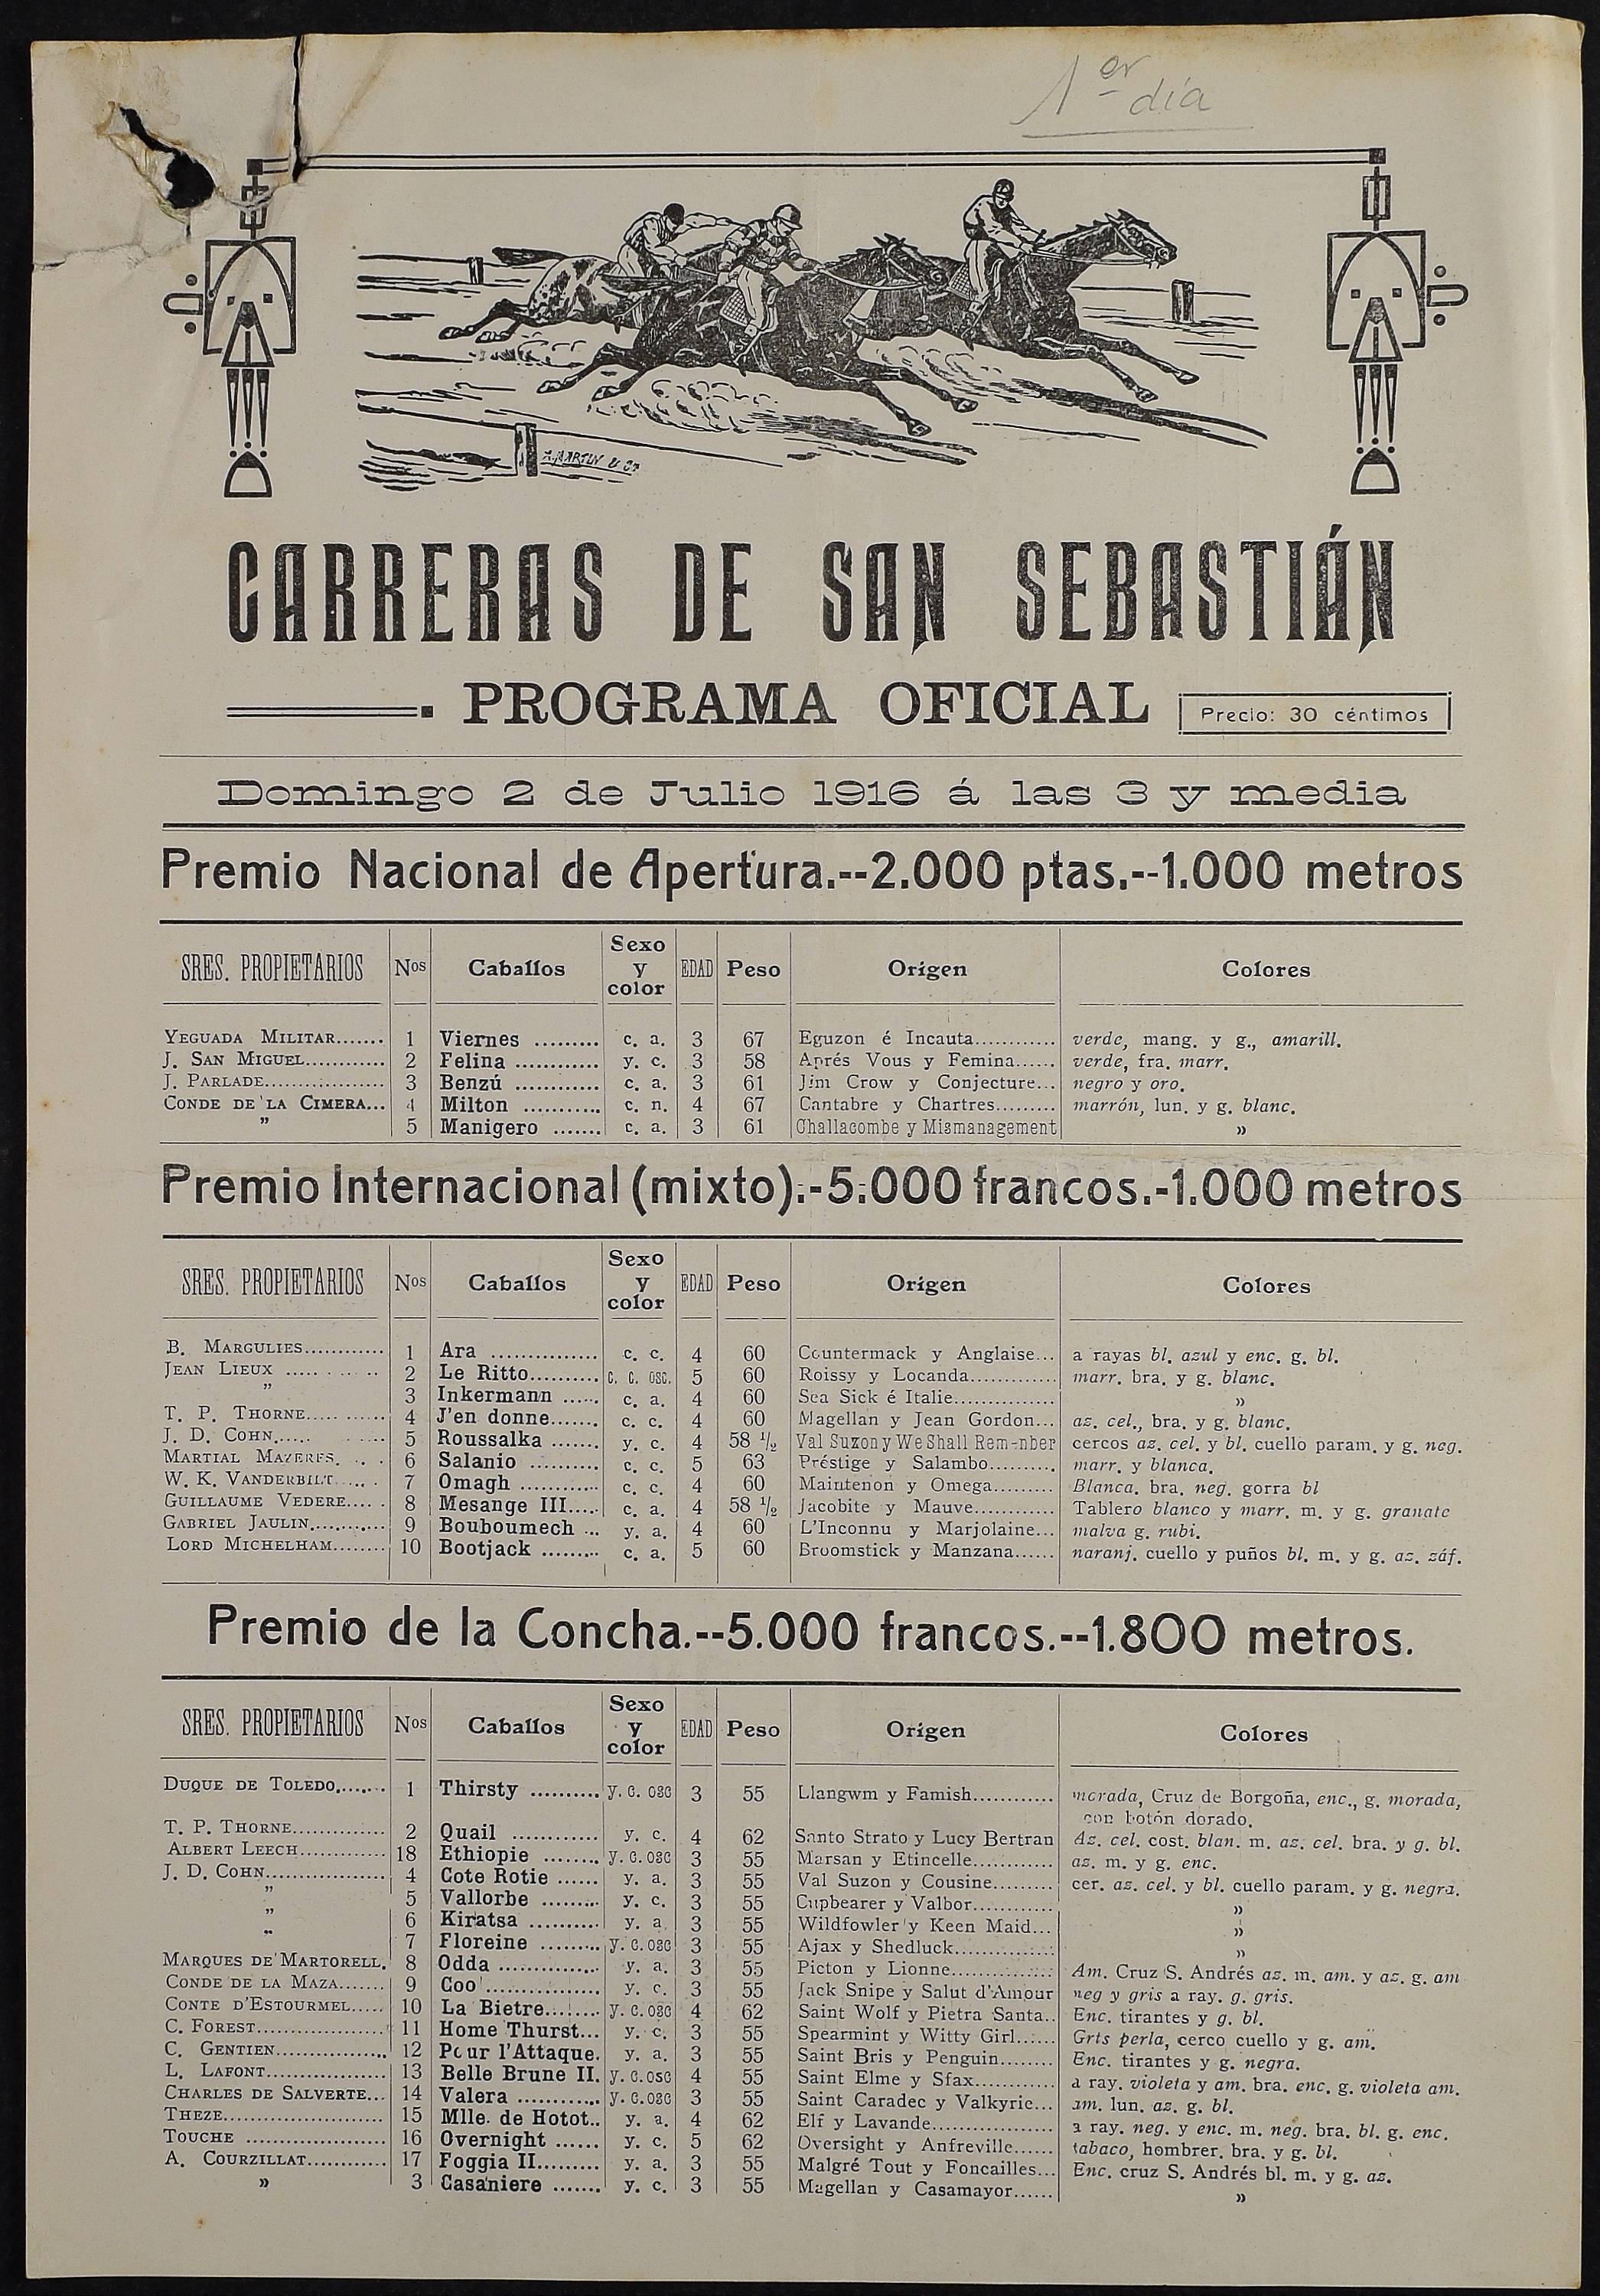 Carreras inaugurales del hipódromo de Lasarte (San Sebastián)